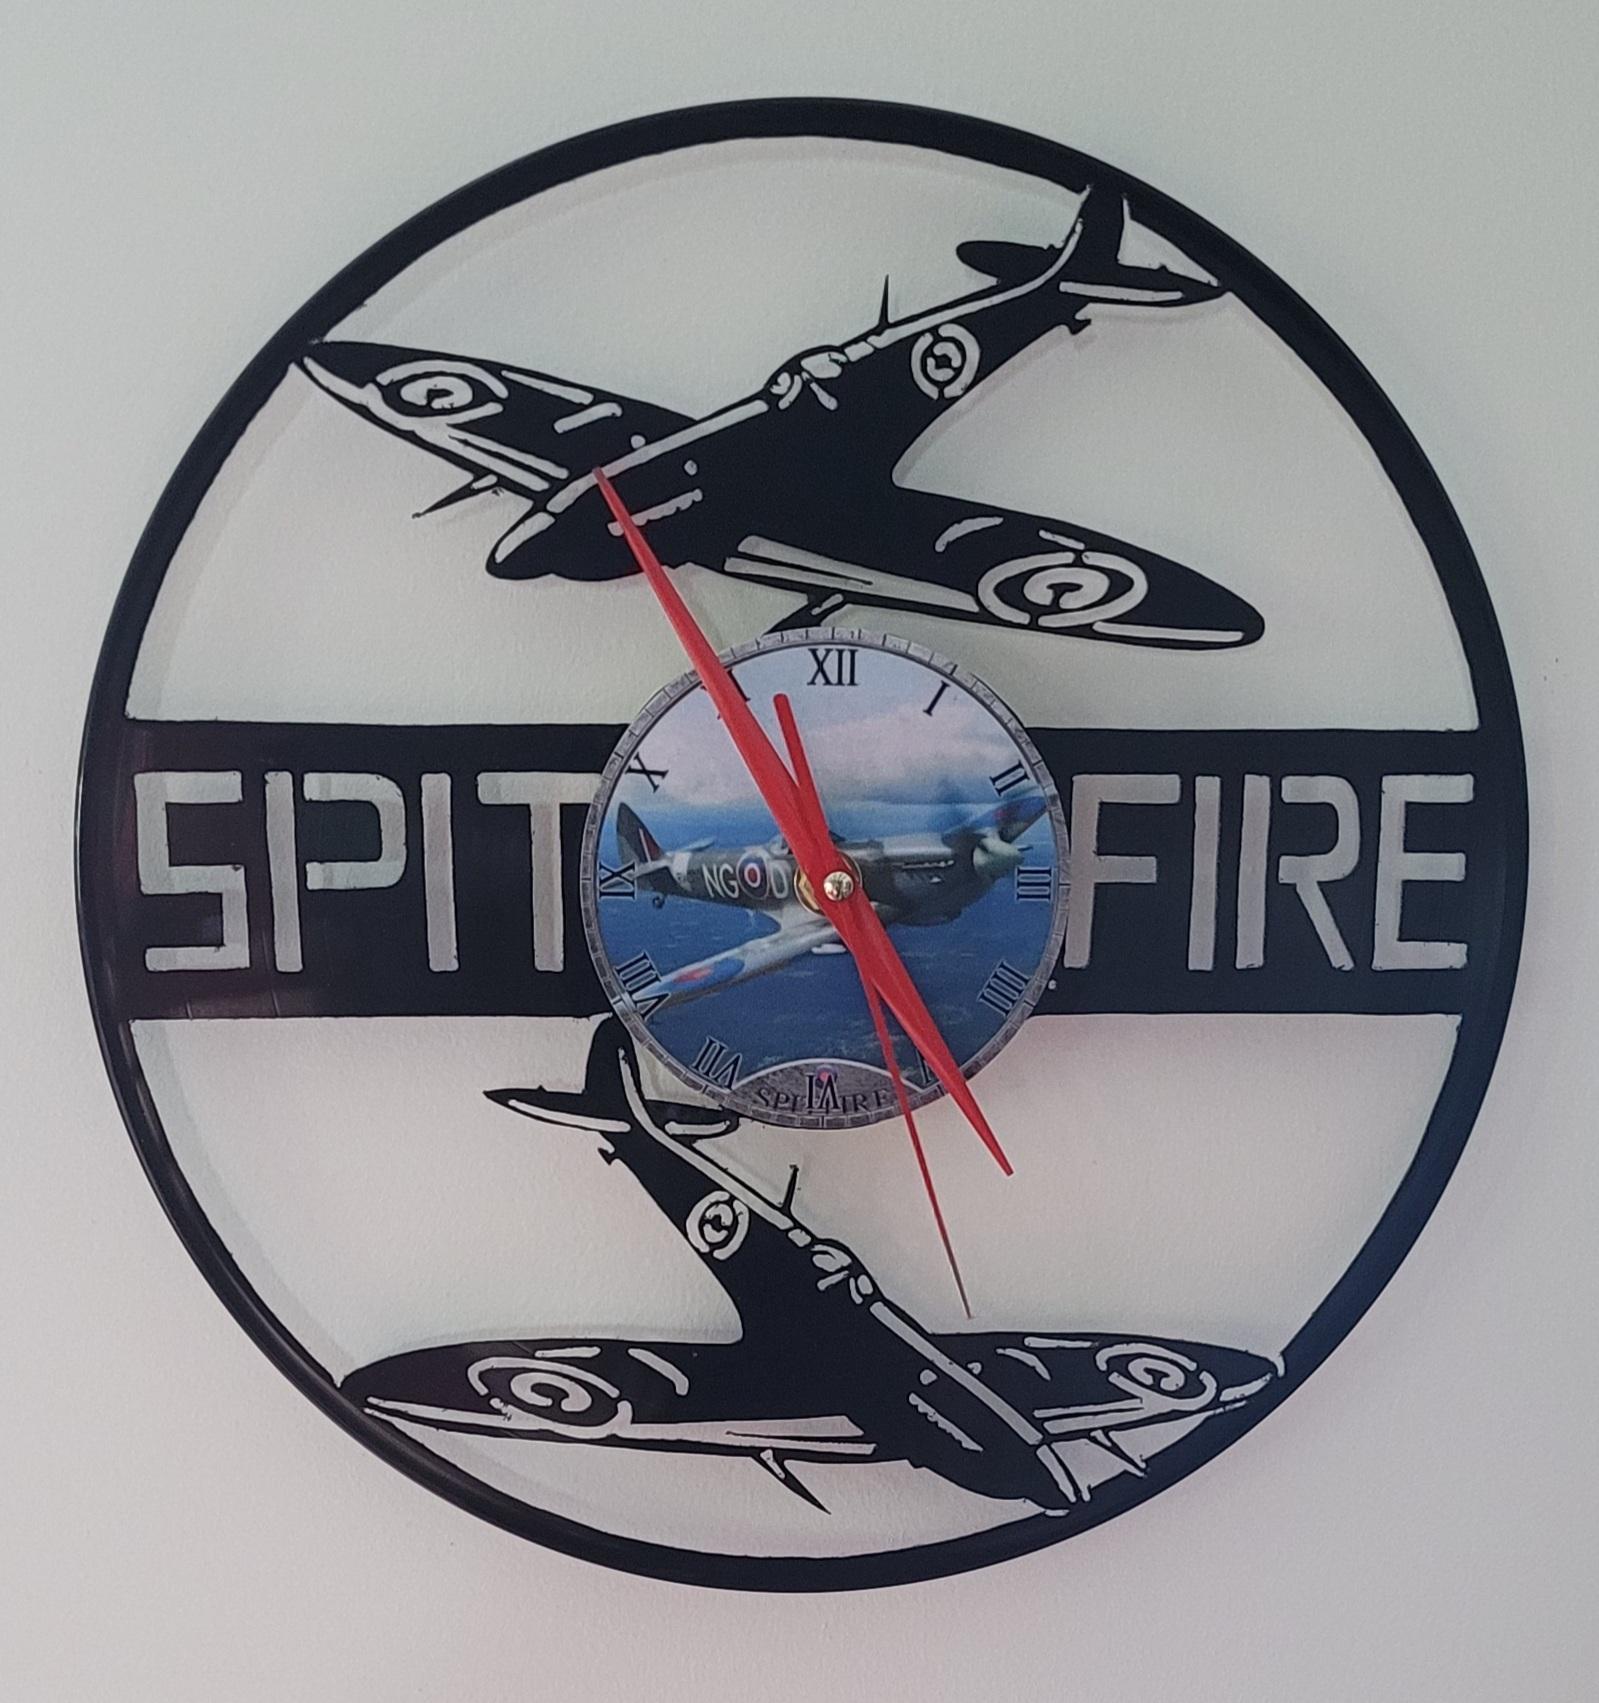 Avion spitfire